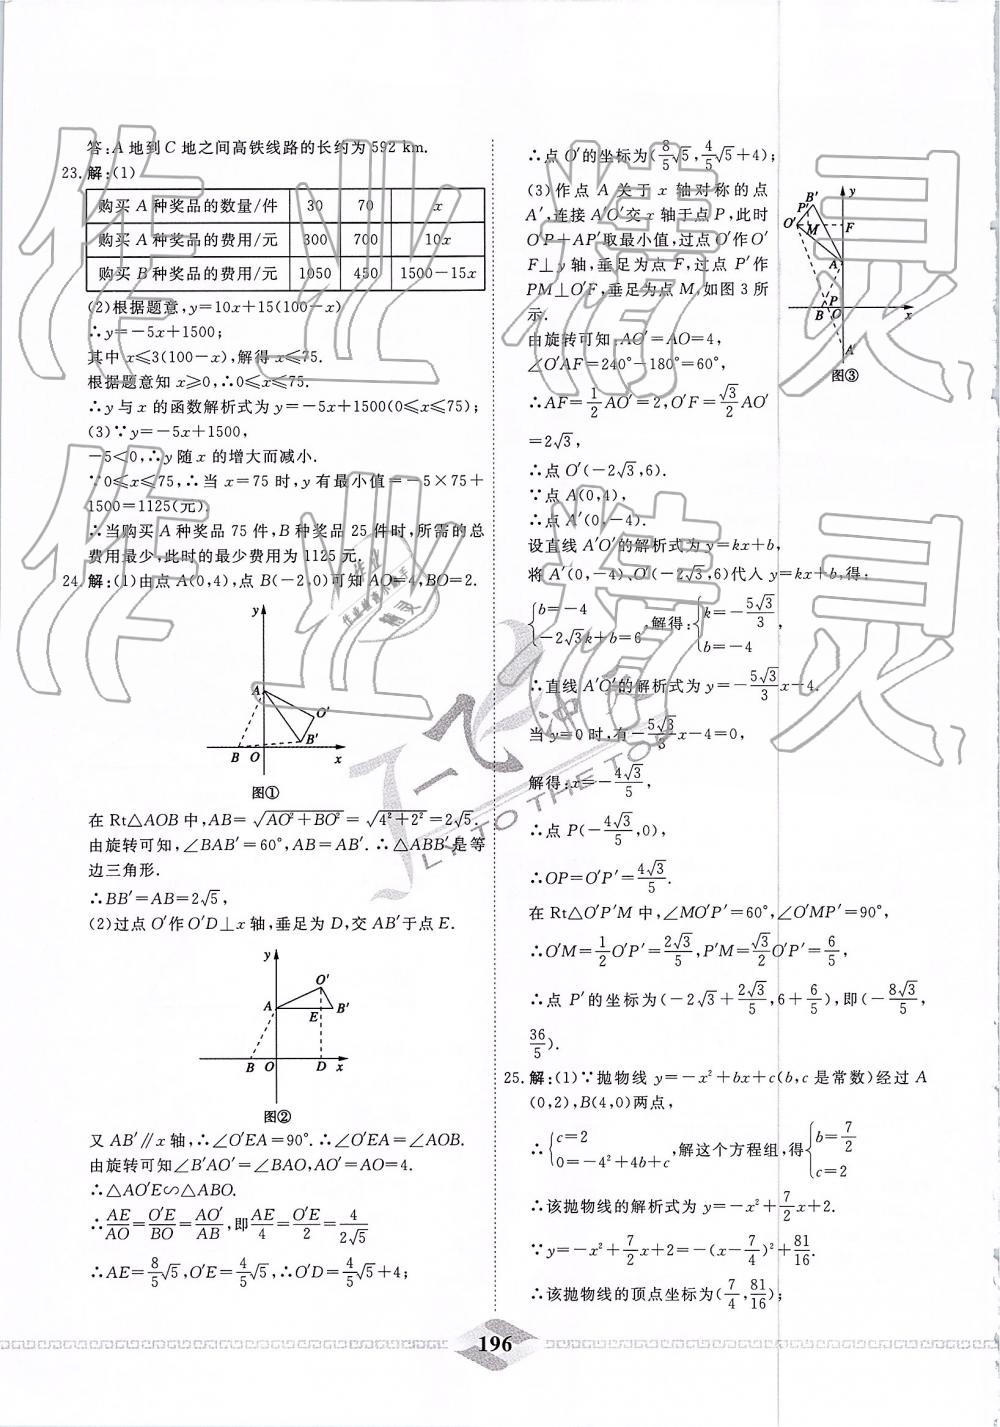 2019年一飞冲天中考模拟试题汇编数学 第36页